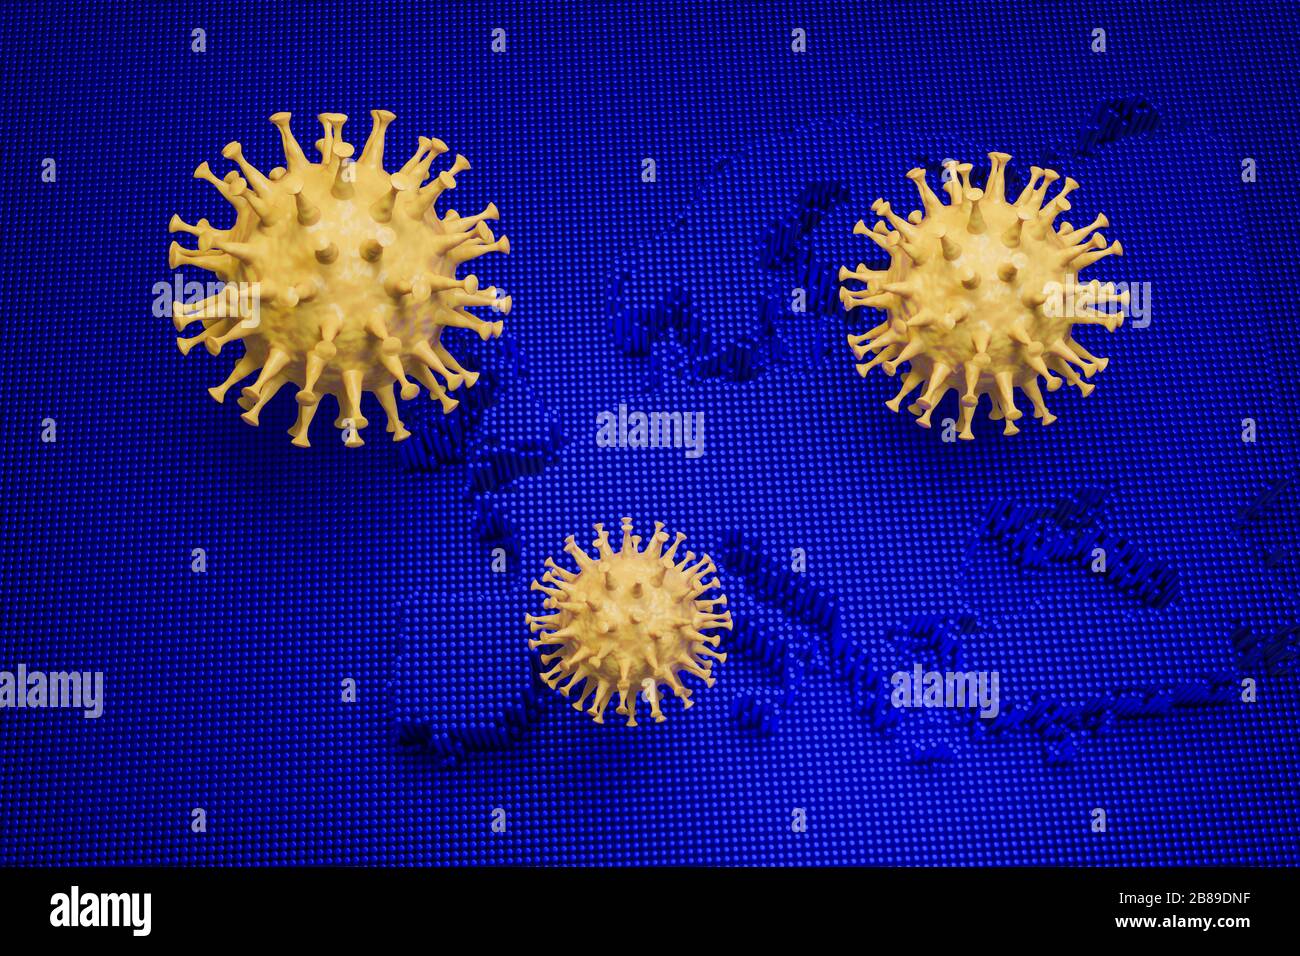 Presentación en 3D: Brote de un nuevo coronavirus SARS-CoV-2 en Europa - imagen esquemática de los virus de la familia Corona en una imagen azul de un mapa de europa Foto de stock